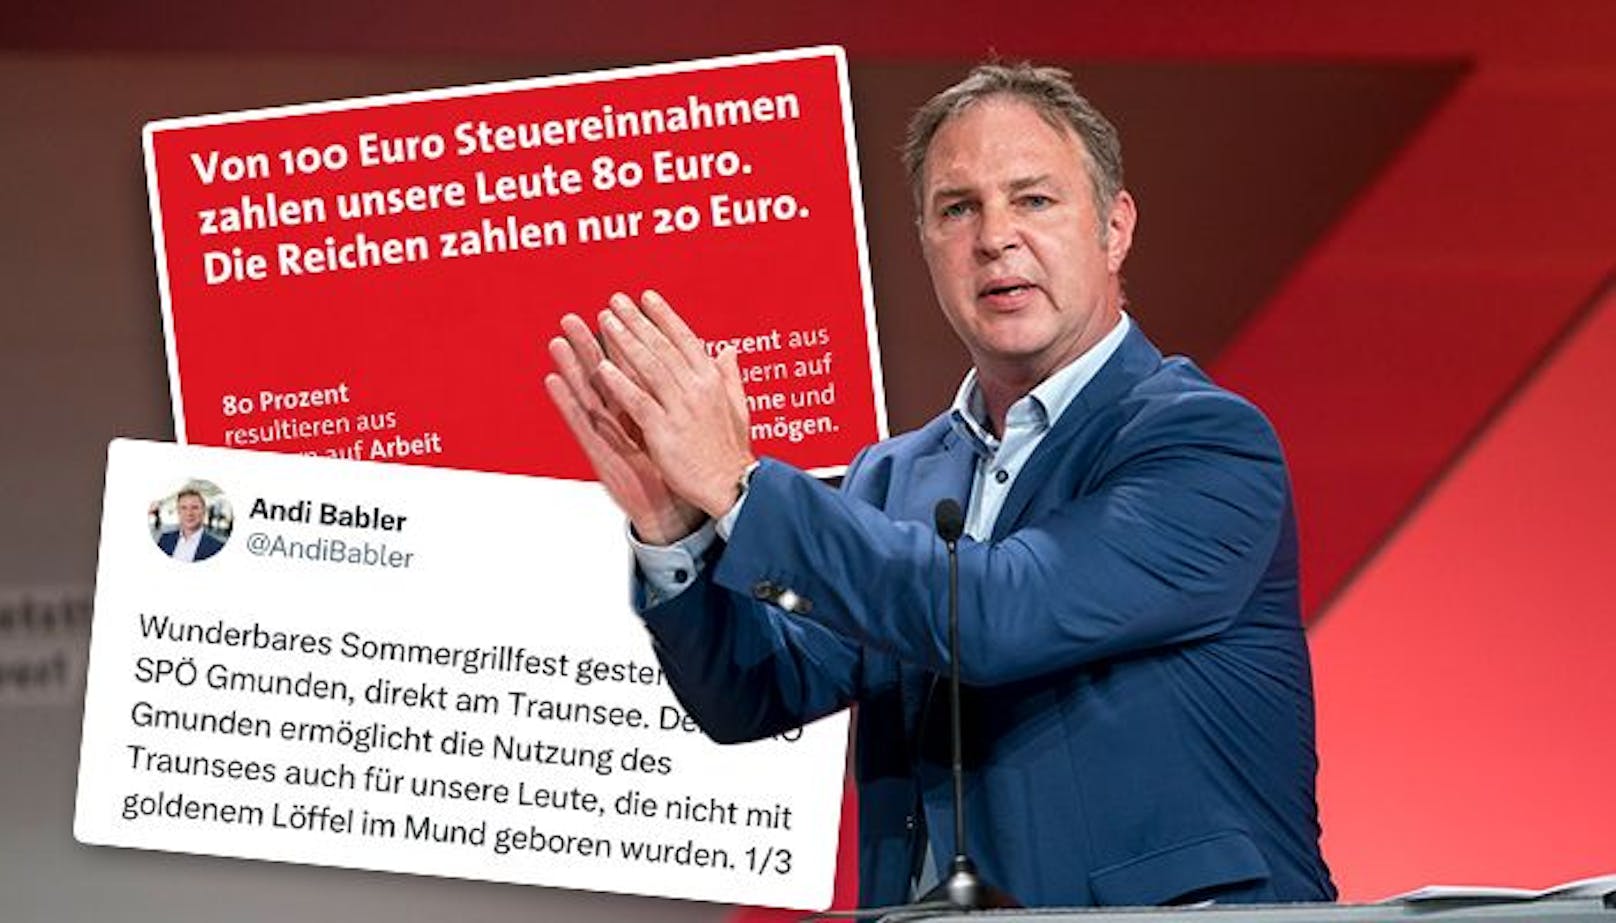 "Unsere Leute": Die Kampagne von SPÖ-Chef Andreas Babler wird im Internet hitzig diskutiert.